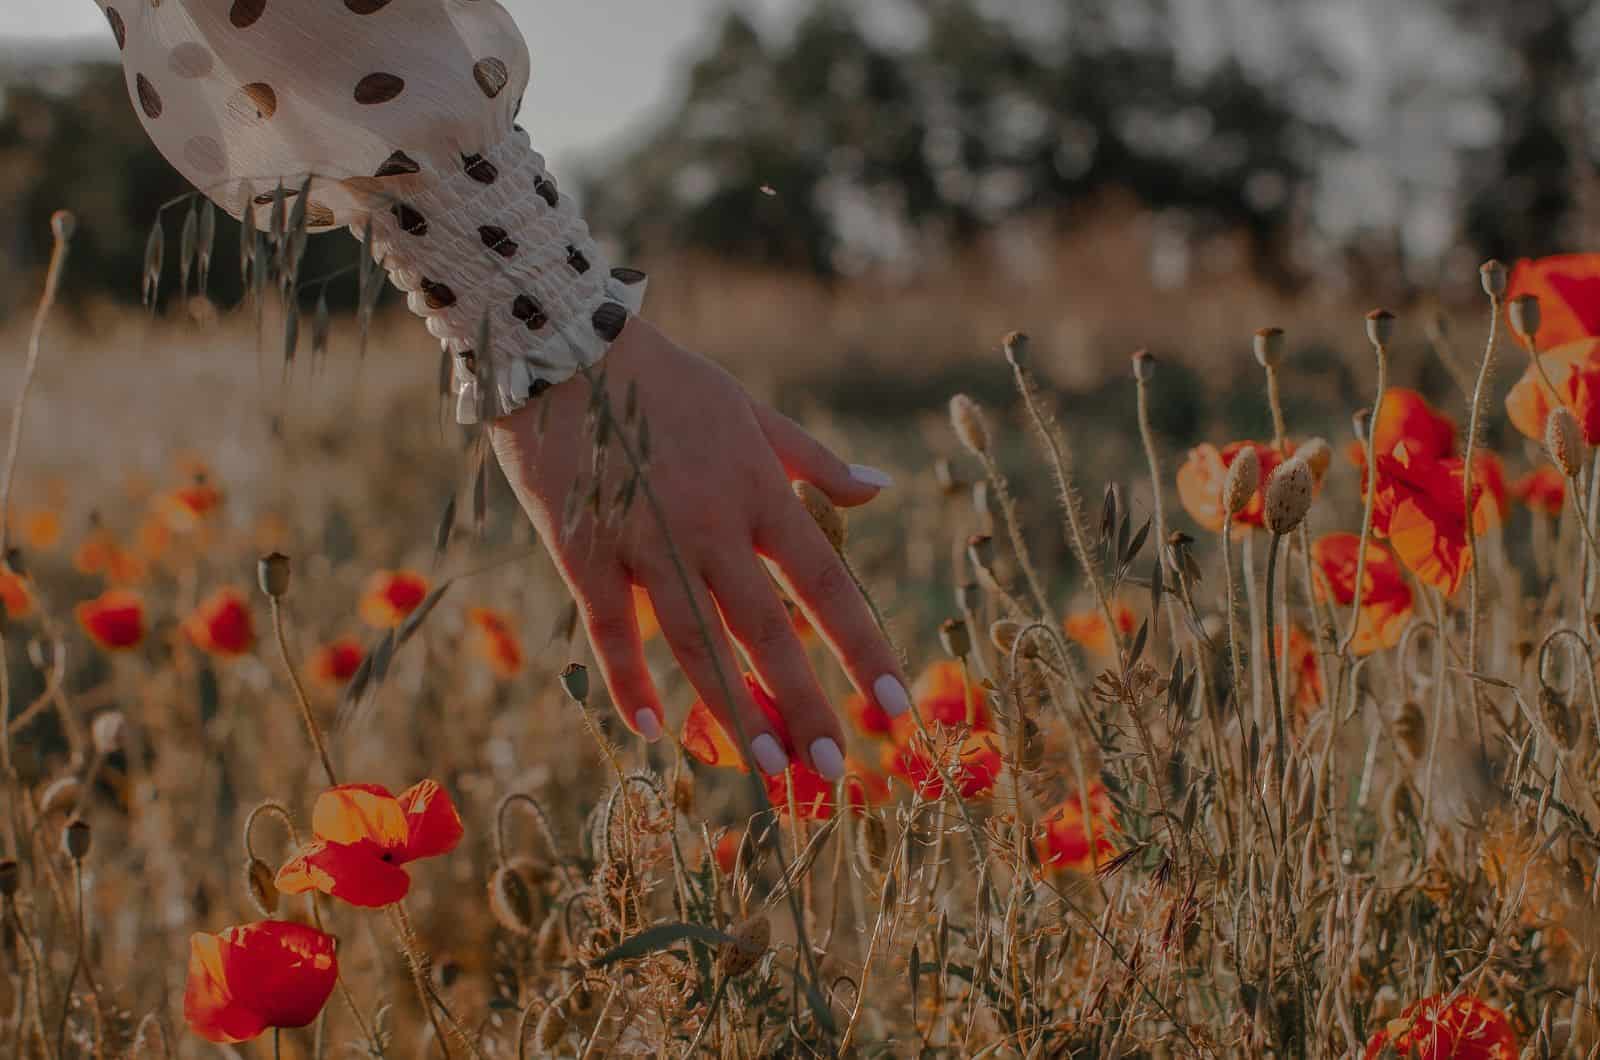 les mains de la femme touchant la fleur de pavot